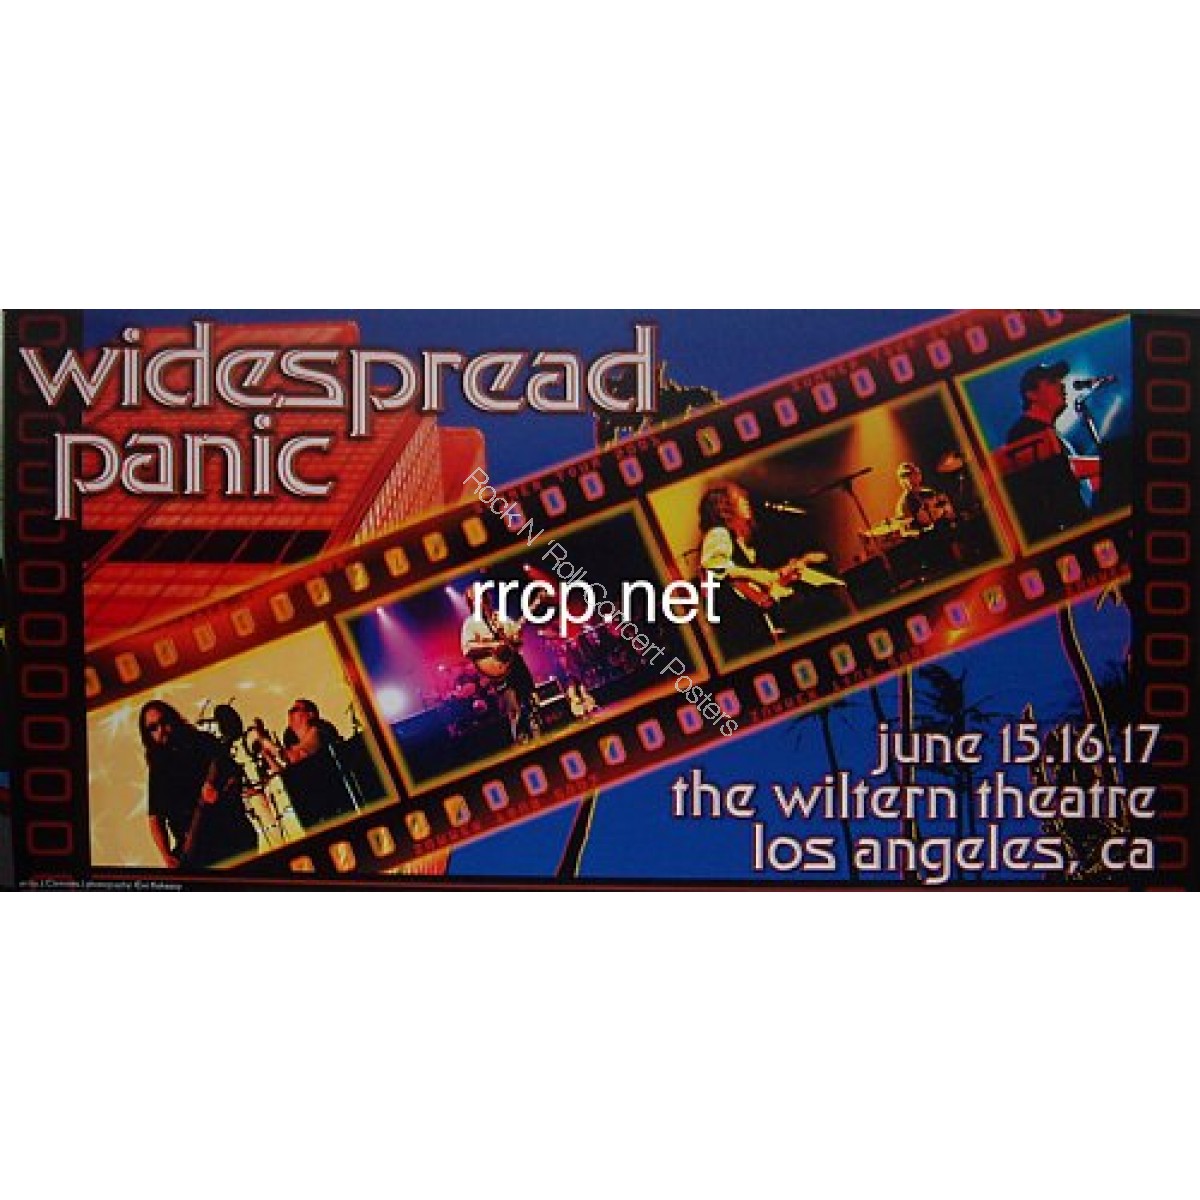 Widespread Panic @ The Wiltern Theatre June 15-17th 2001 Rare Poster